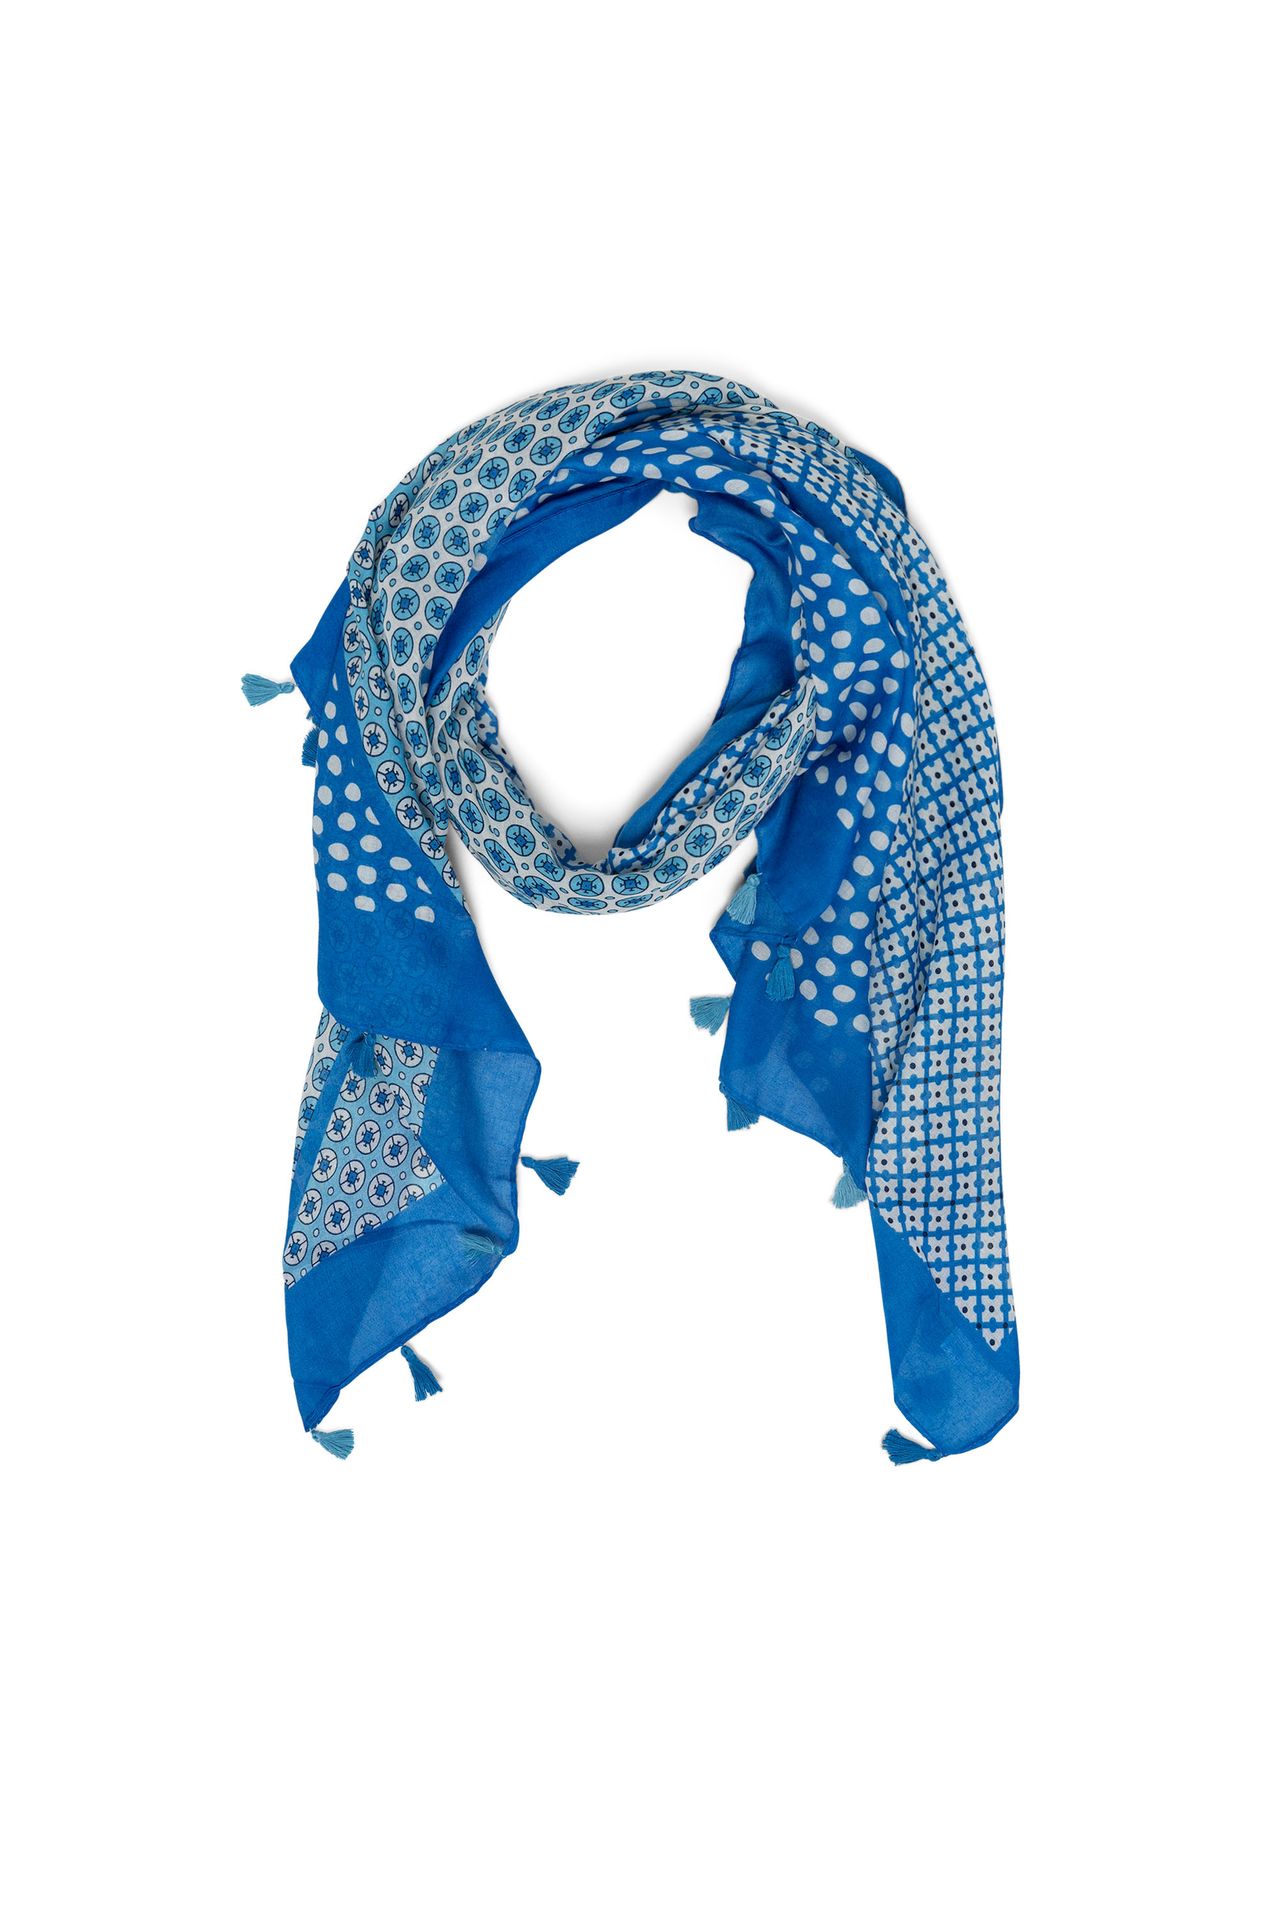 Norah Blauwe sjaal met tassels cobalt multicolor 213589-469